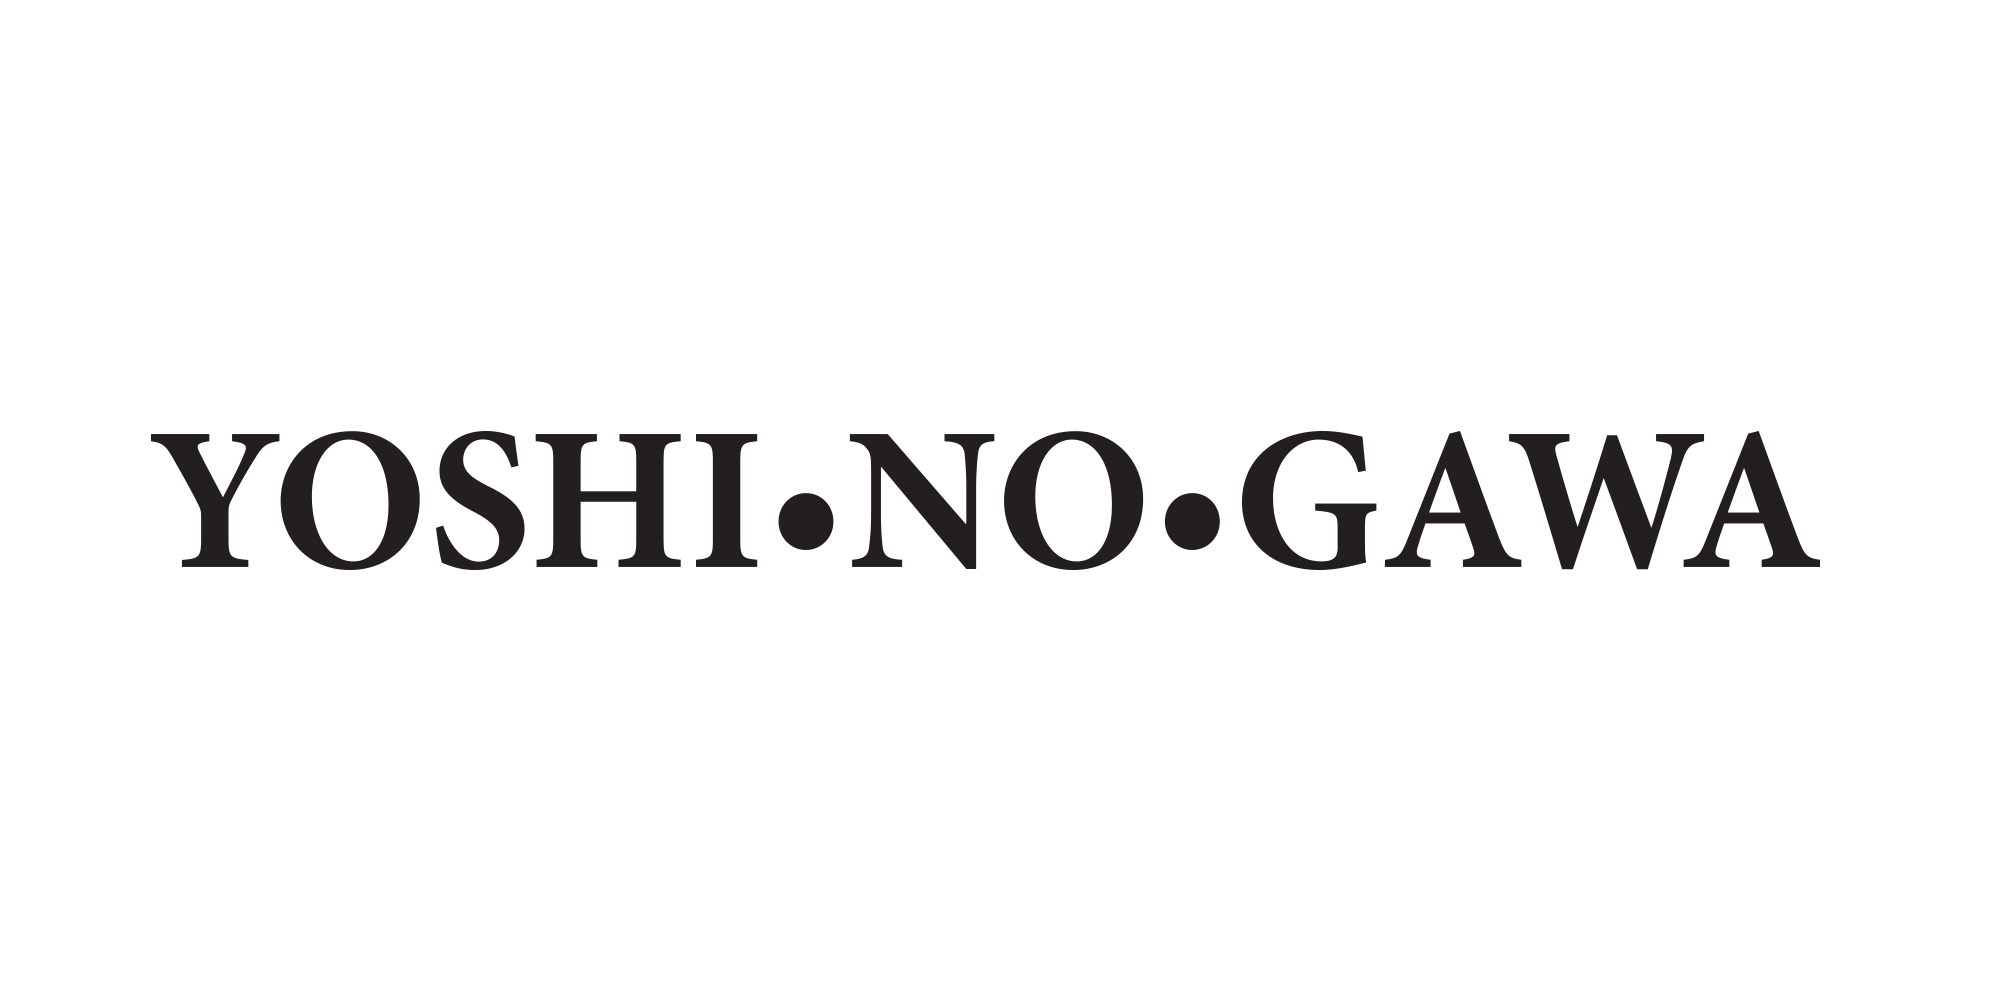 Black Yoshinogawa logo